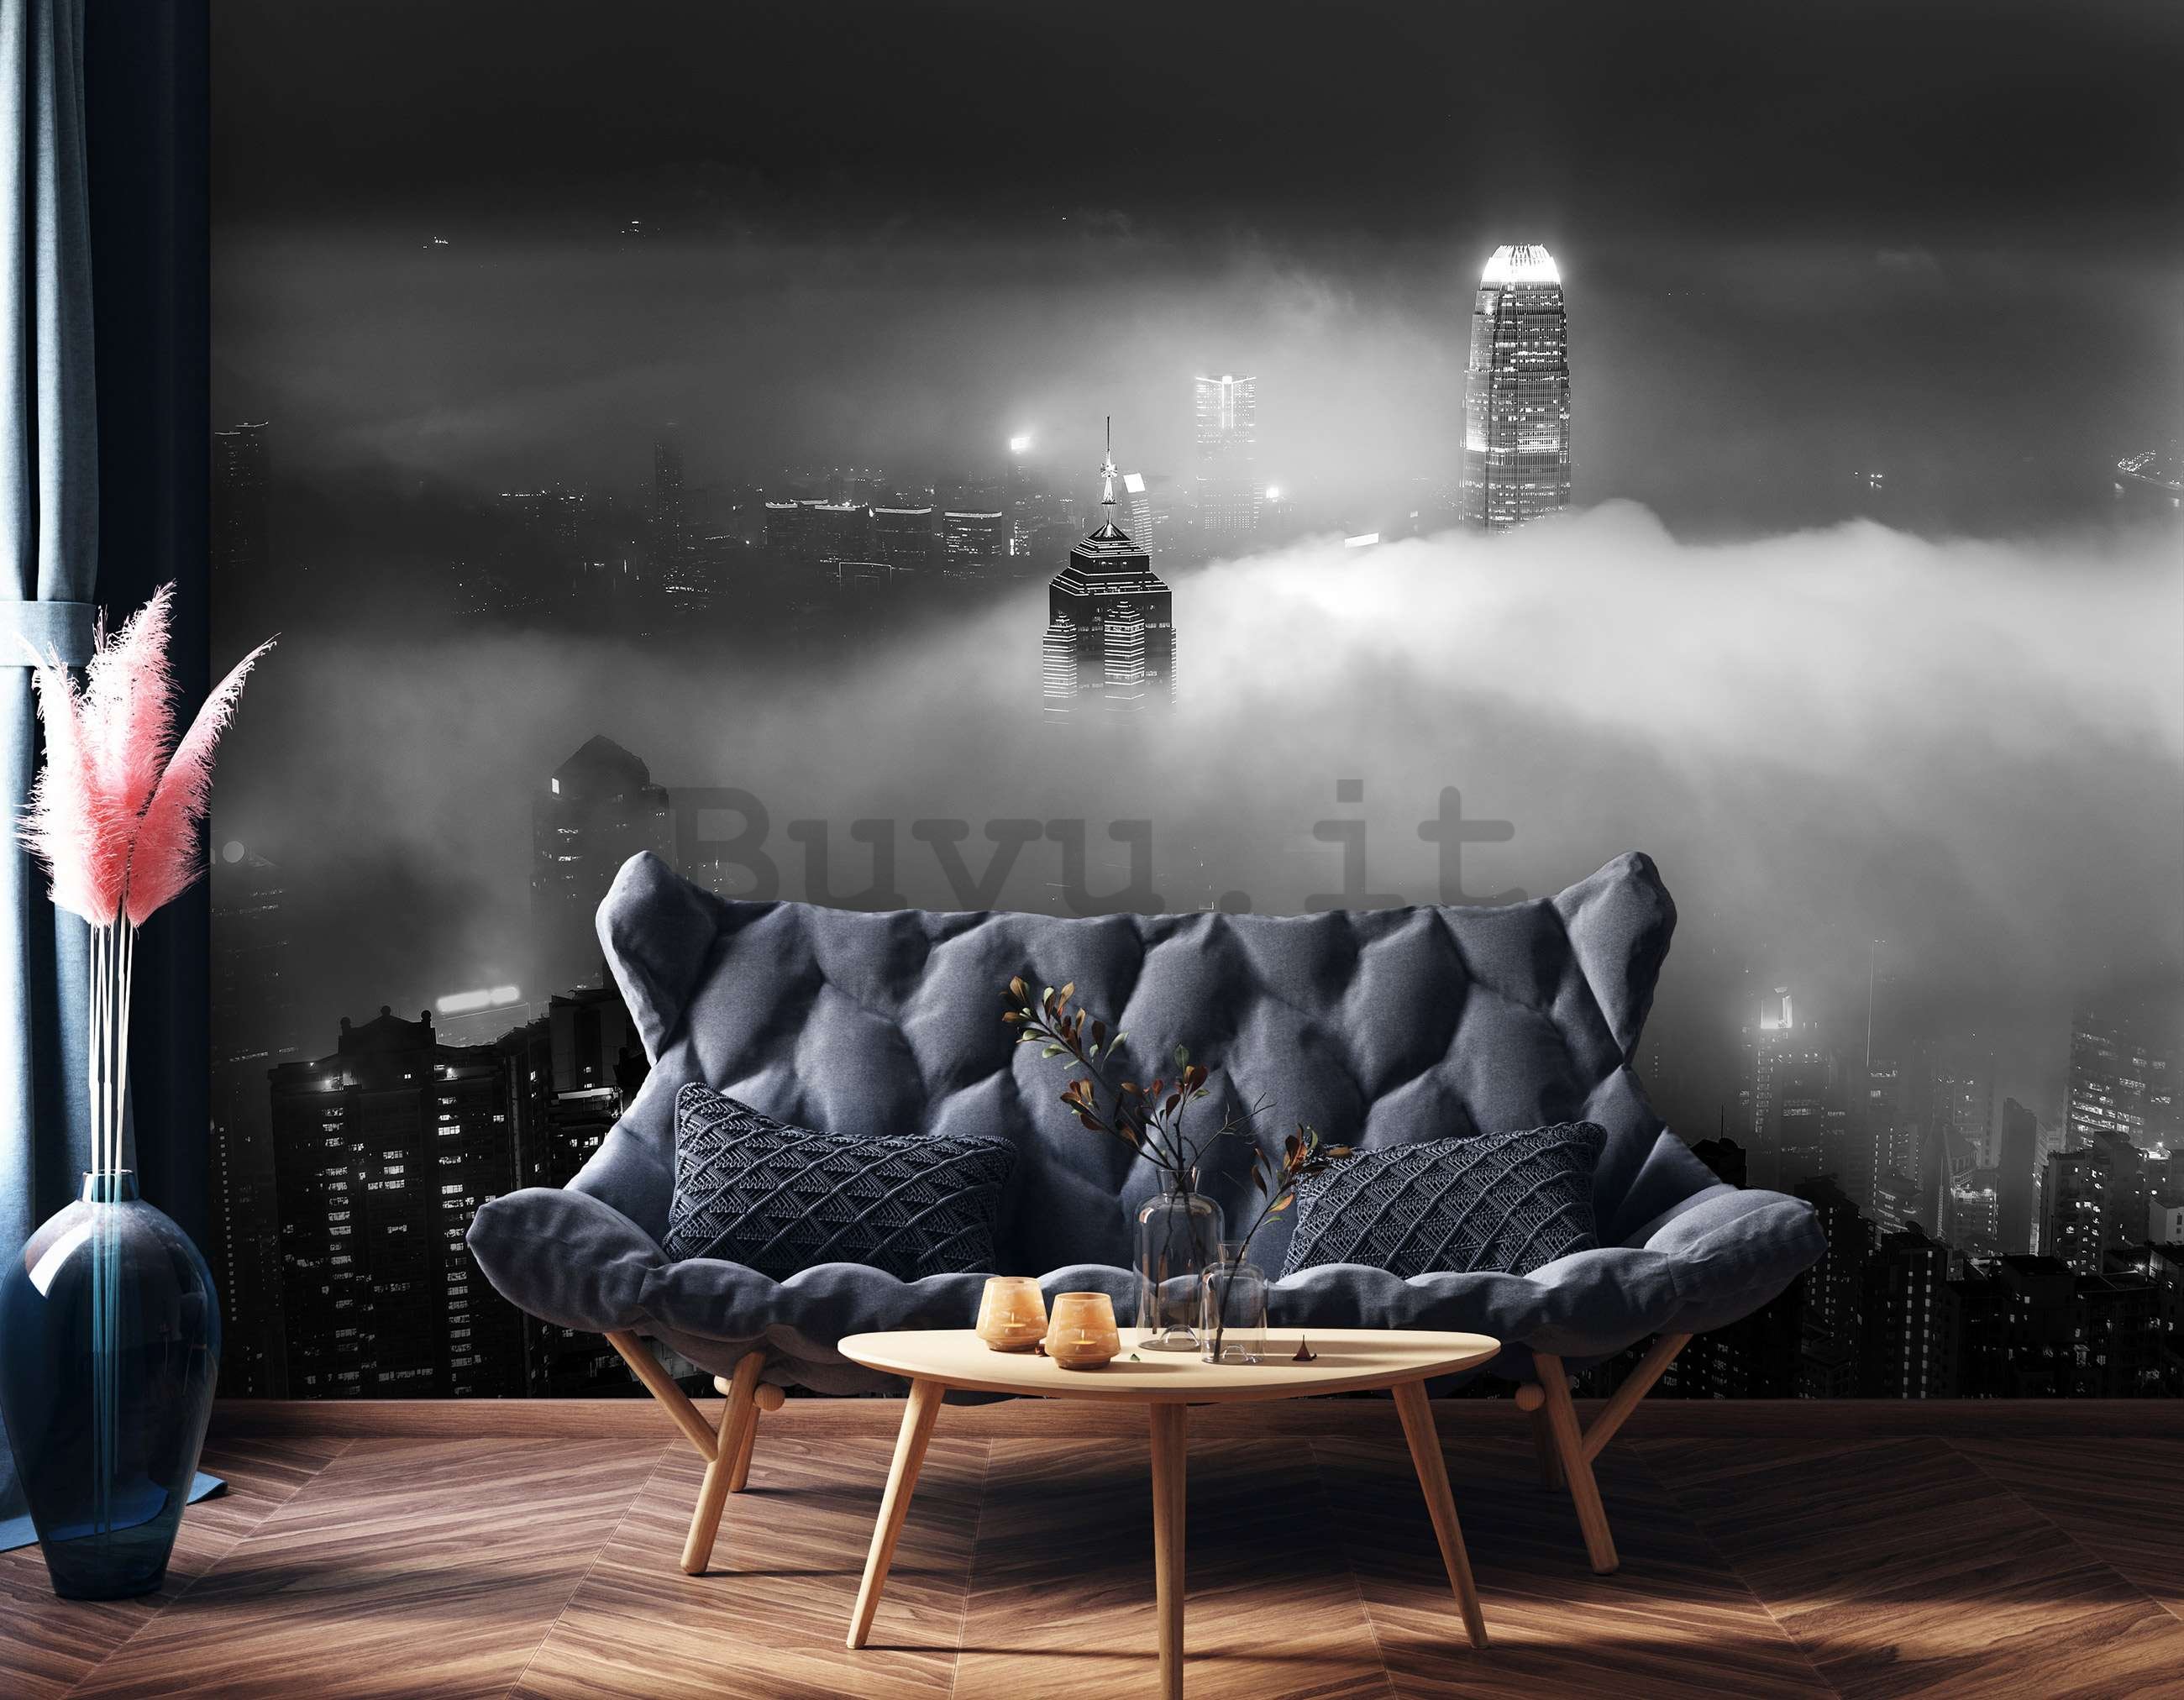 Fotomurale in TNT: Citta notturna nella nebbia (bianco e nero) - 368x254 cm